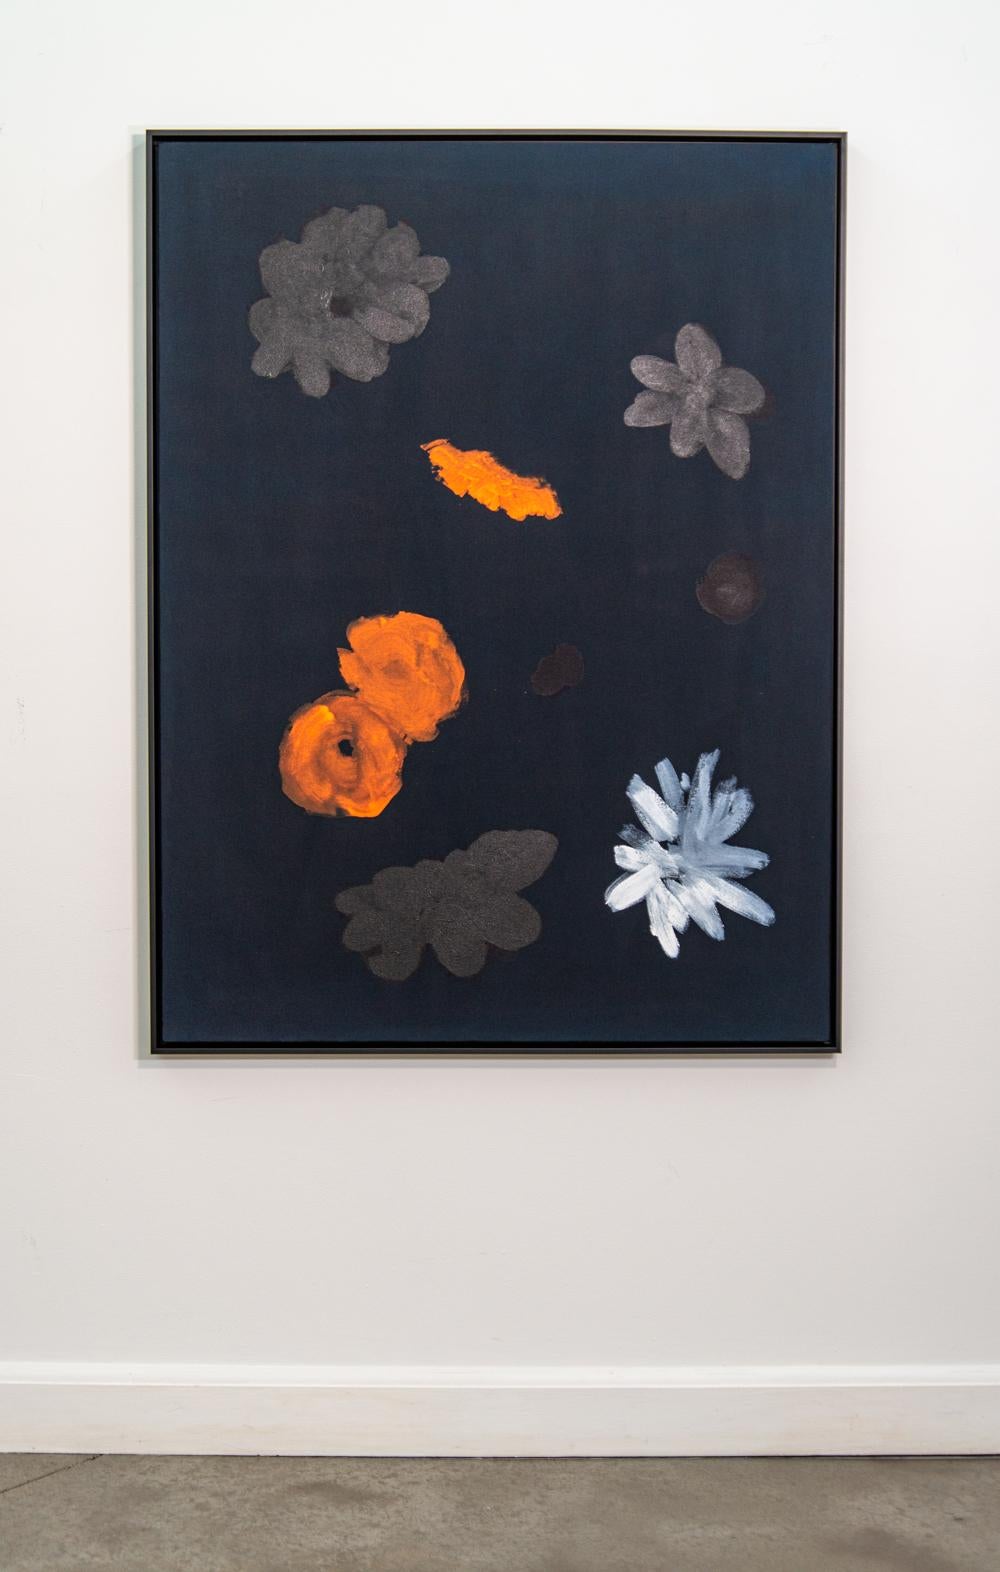 Le noir mat offre un arrière-plan saisissant à cette peinture abstraite de Pat Service. Des fleurs orange vif et blanches ressortent sur le noir, tandis que plusieurs autres formes florales dans des tons sourds offrent un contraste. Service est une